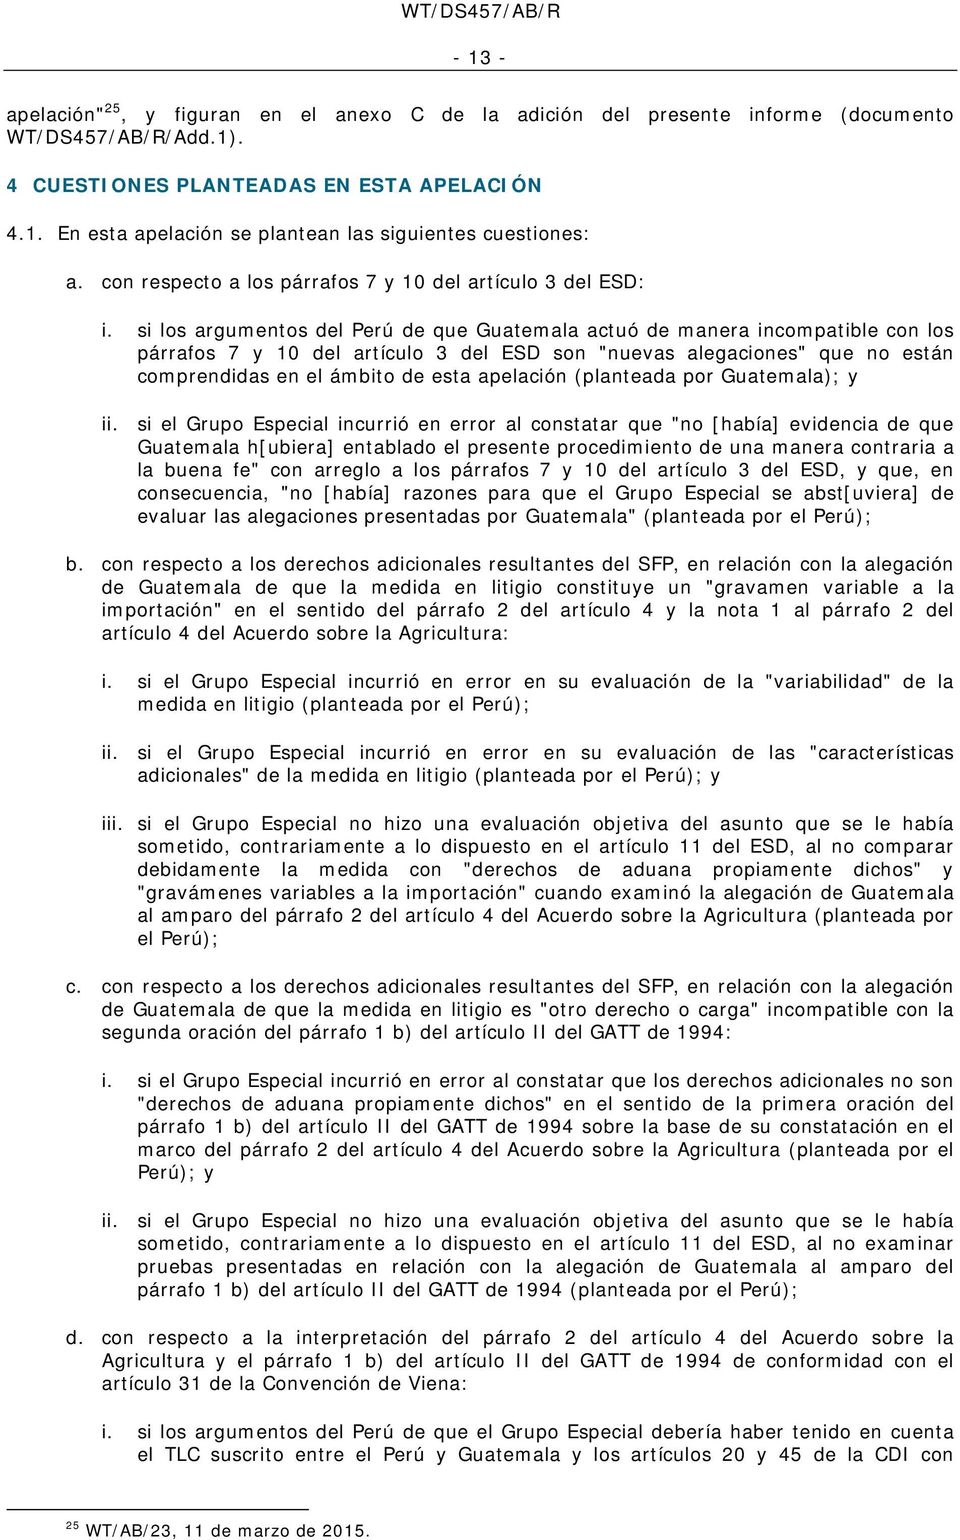 si los argumentos del Perú de que Guatemala actuó de manera incompatible con los párrafos 7 y 10 del artículo 3 del ESD son "nuevas alegaciones" que no están comprendidas en el ámbito de esta